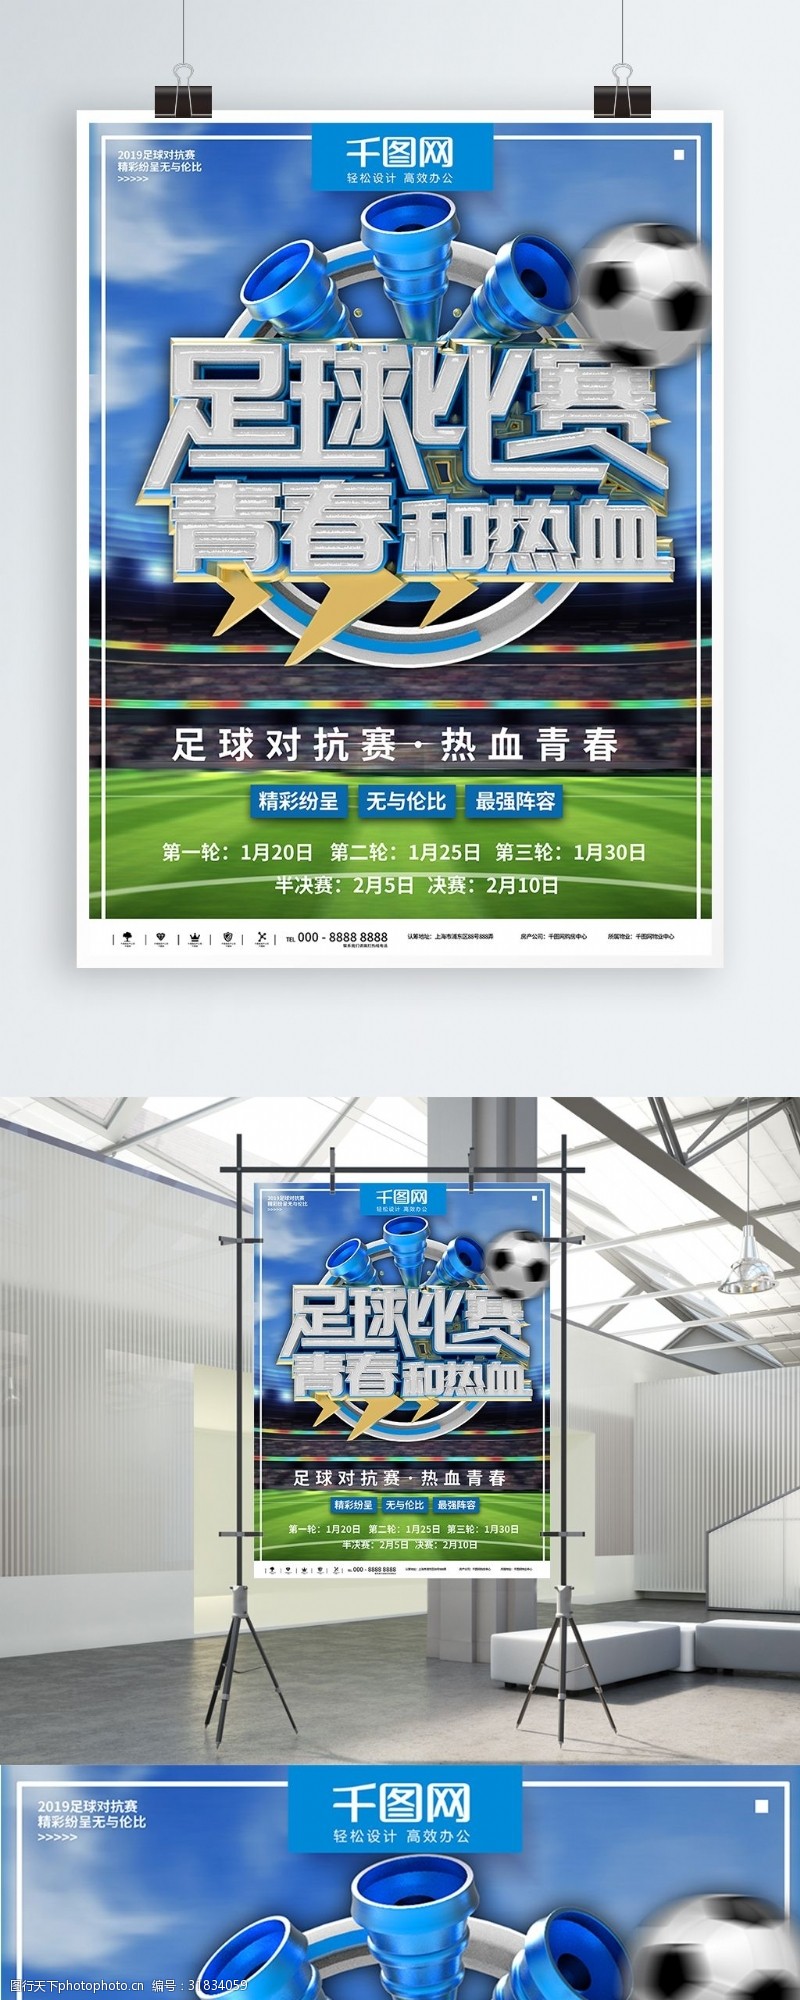 大学足球赛蓝色时尚足球比赛商业宣传海报